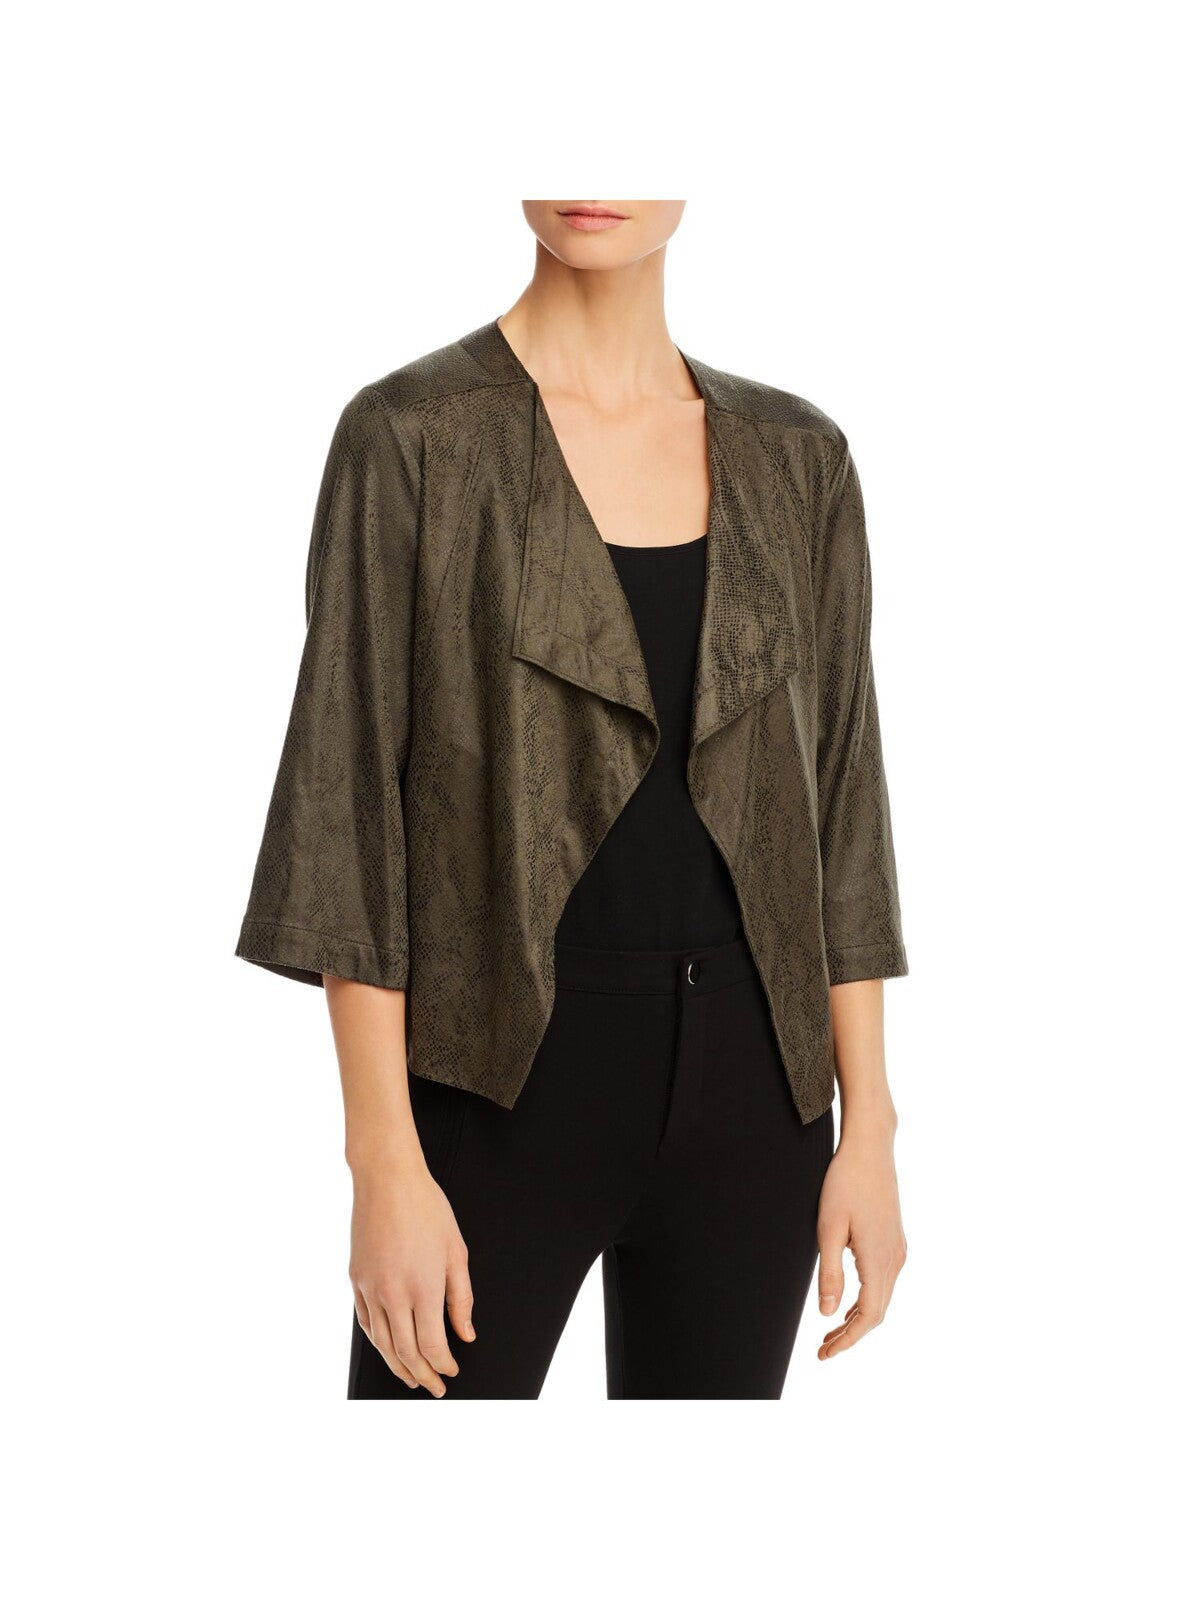 LYSSE Womens Green Faux Suede 3/4 Sleeve Open Front Blazer Jacket XL